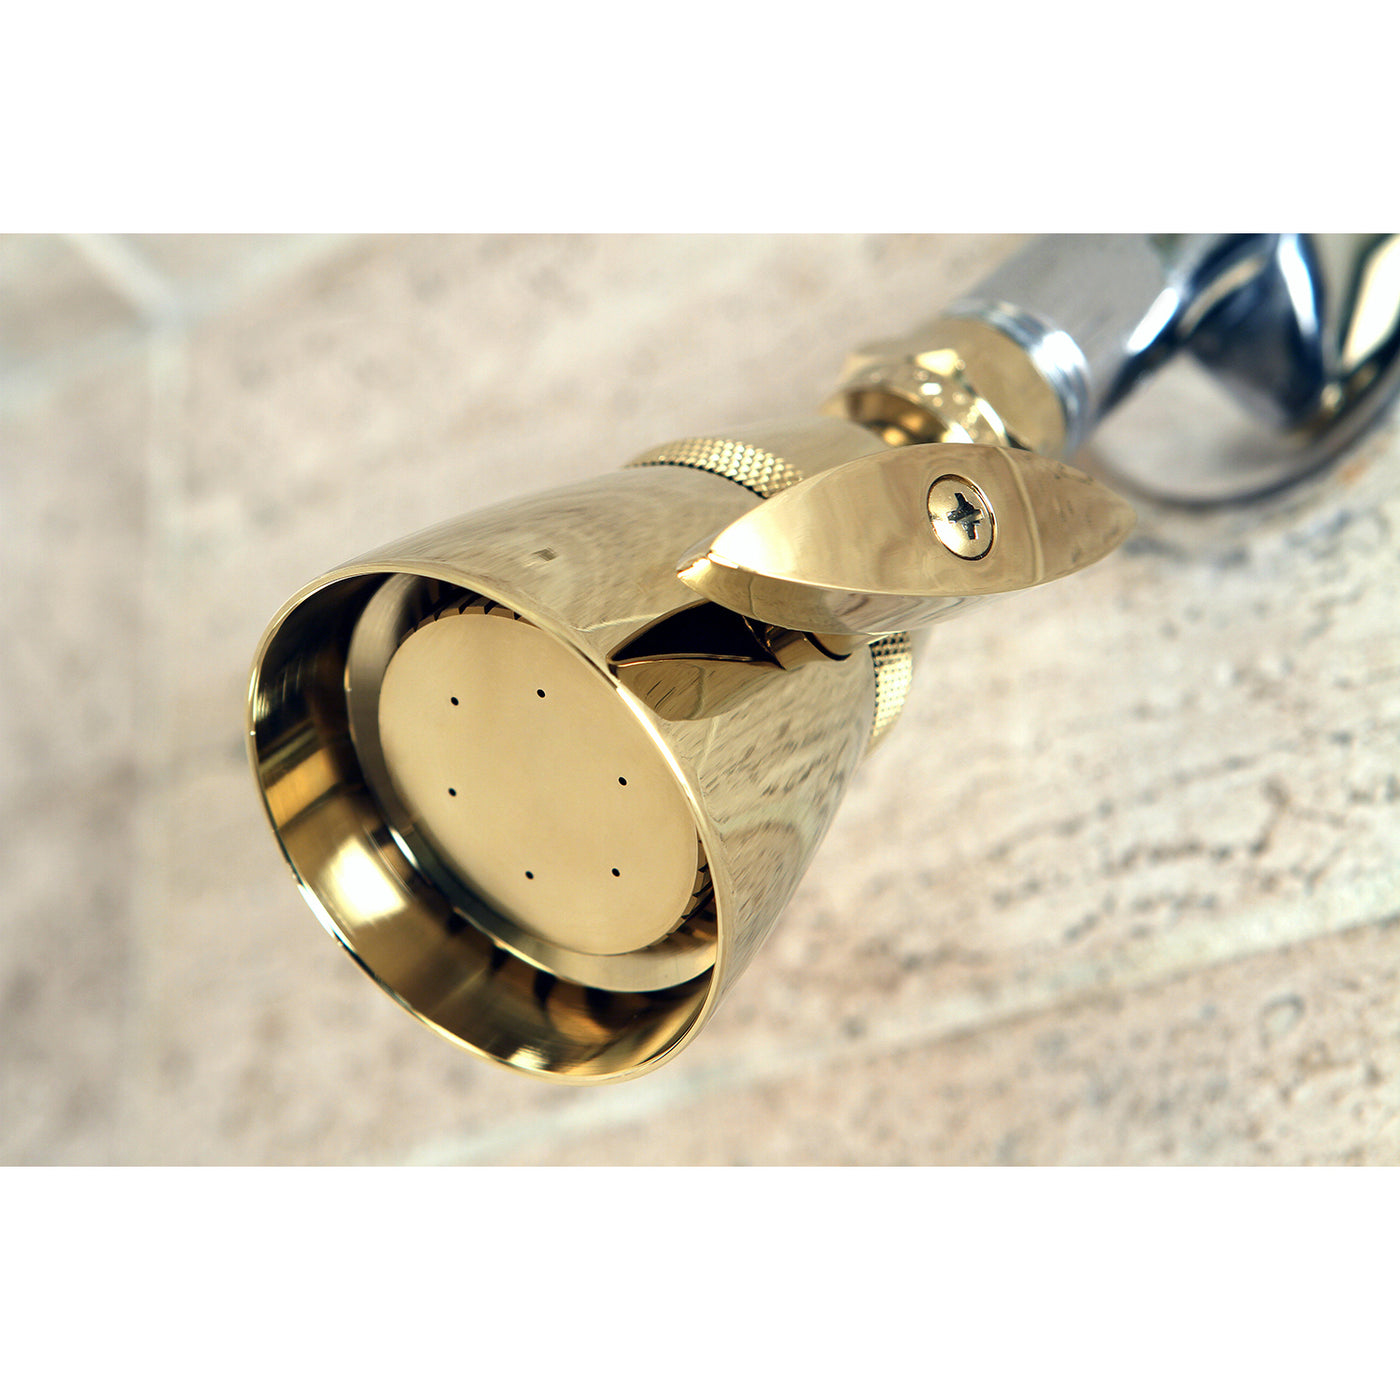 Elements of Design DK132A2 2-1/4-Inch Adjustable Shower Head, Polished Brass